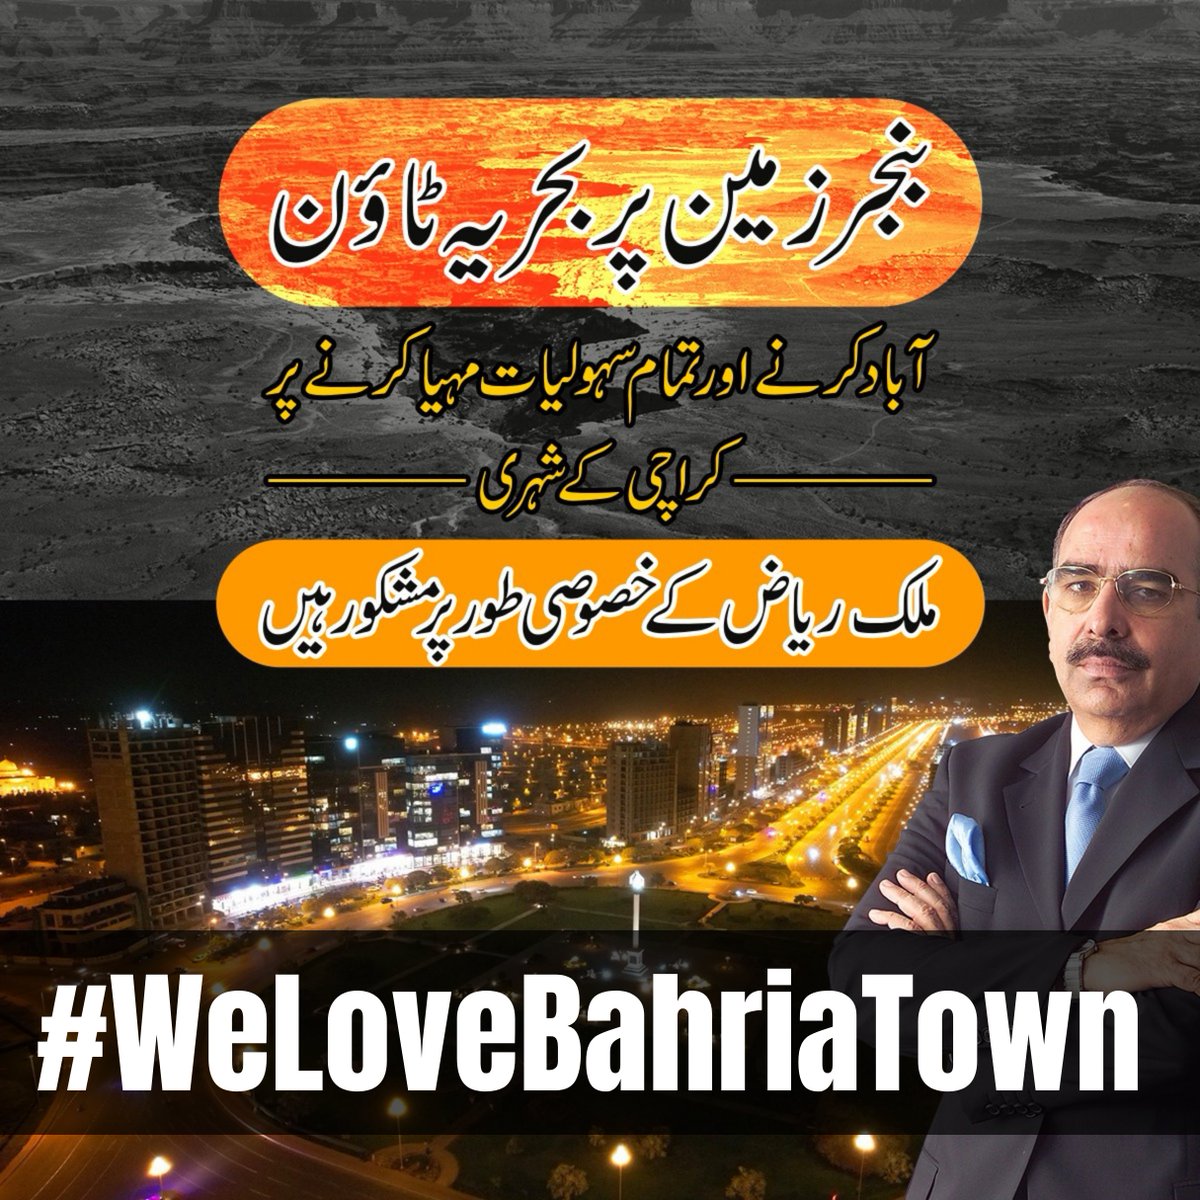 بحریہ ٹاؤن کراچی پاکستان میں جدت اور معیار کی بہت بڑی علامت ہے جس نے کراچی کے رہن سہن کو یکساں تبدیل کردیا
#BahriaTownKarachi #BahriaTown #MalikRiaz #WeLoveMalikRiaz #WeStandWithMalikRiaz
#WeLoveBahriaTown #WeStandWithBahriaTown